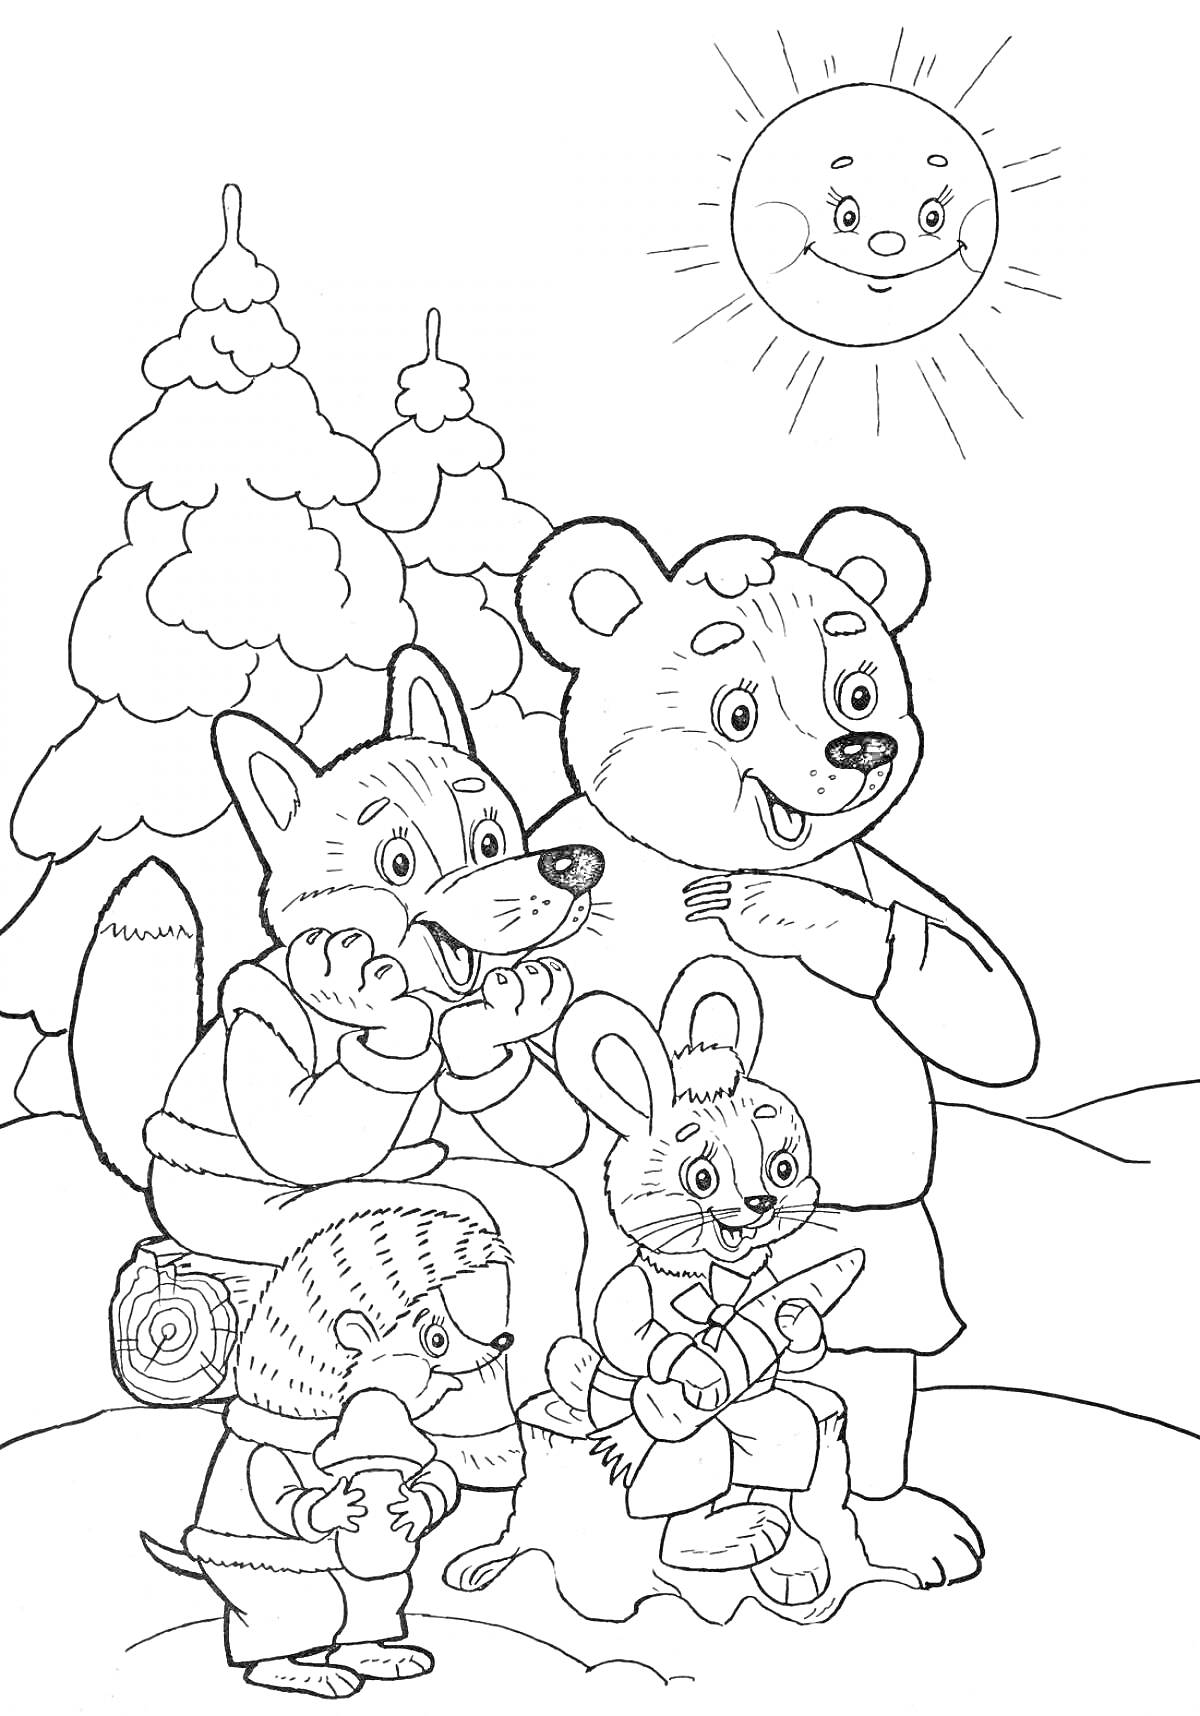 Раскраска Медведь, лиса, ежик и кролик под солнцем в зимнем лесу